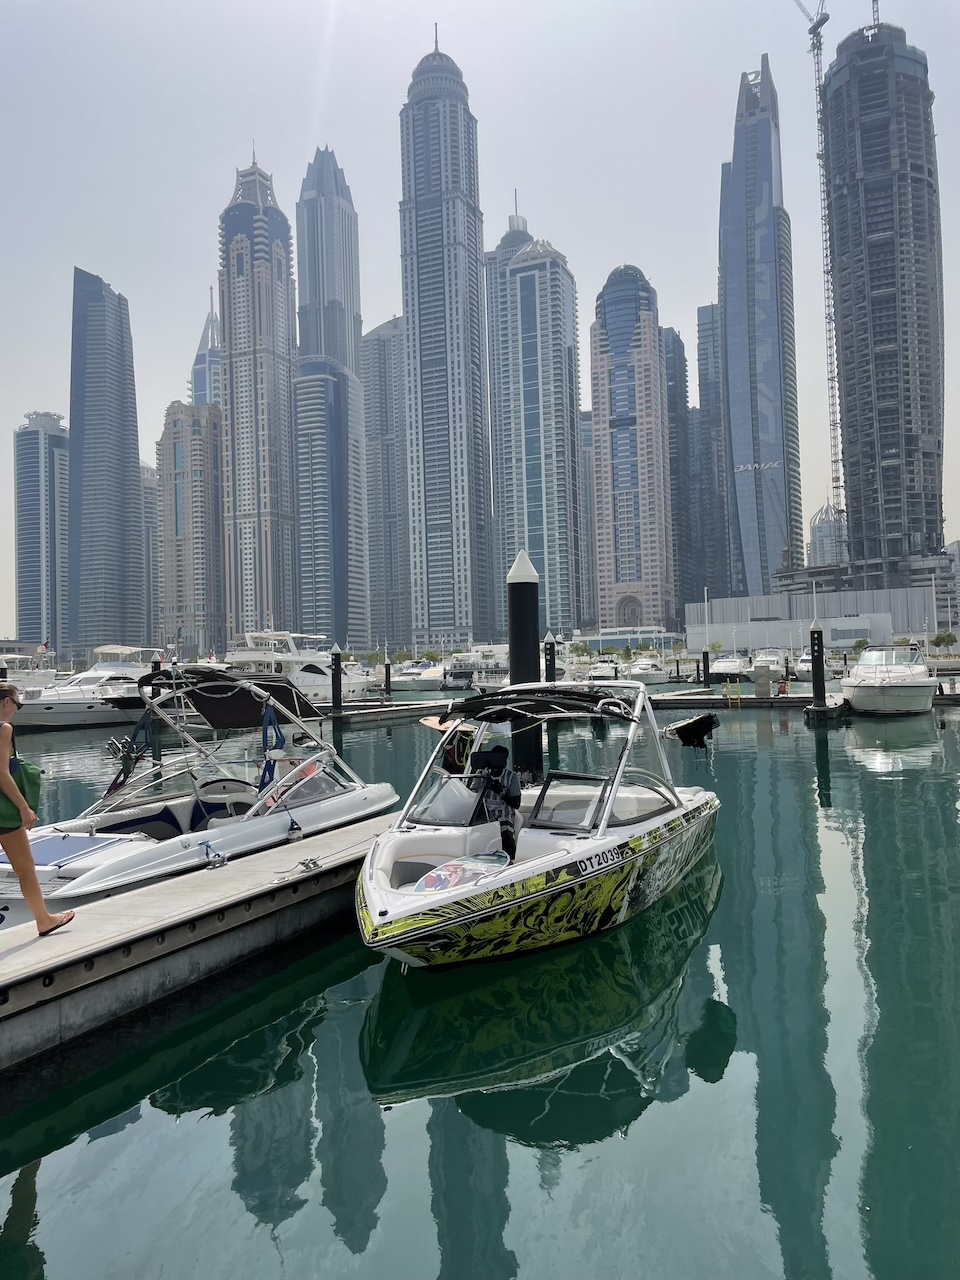 Croisières d’exploration : Découverte des joyaux cachés de Dubaï à partir d’un yacht